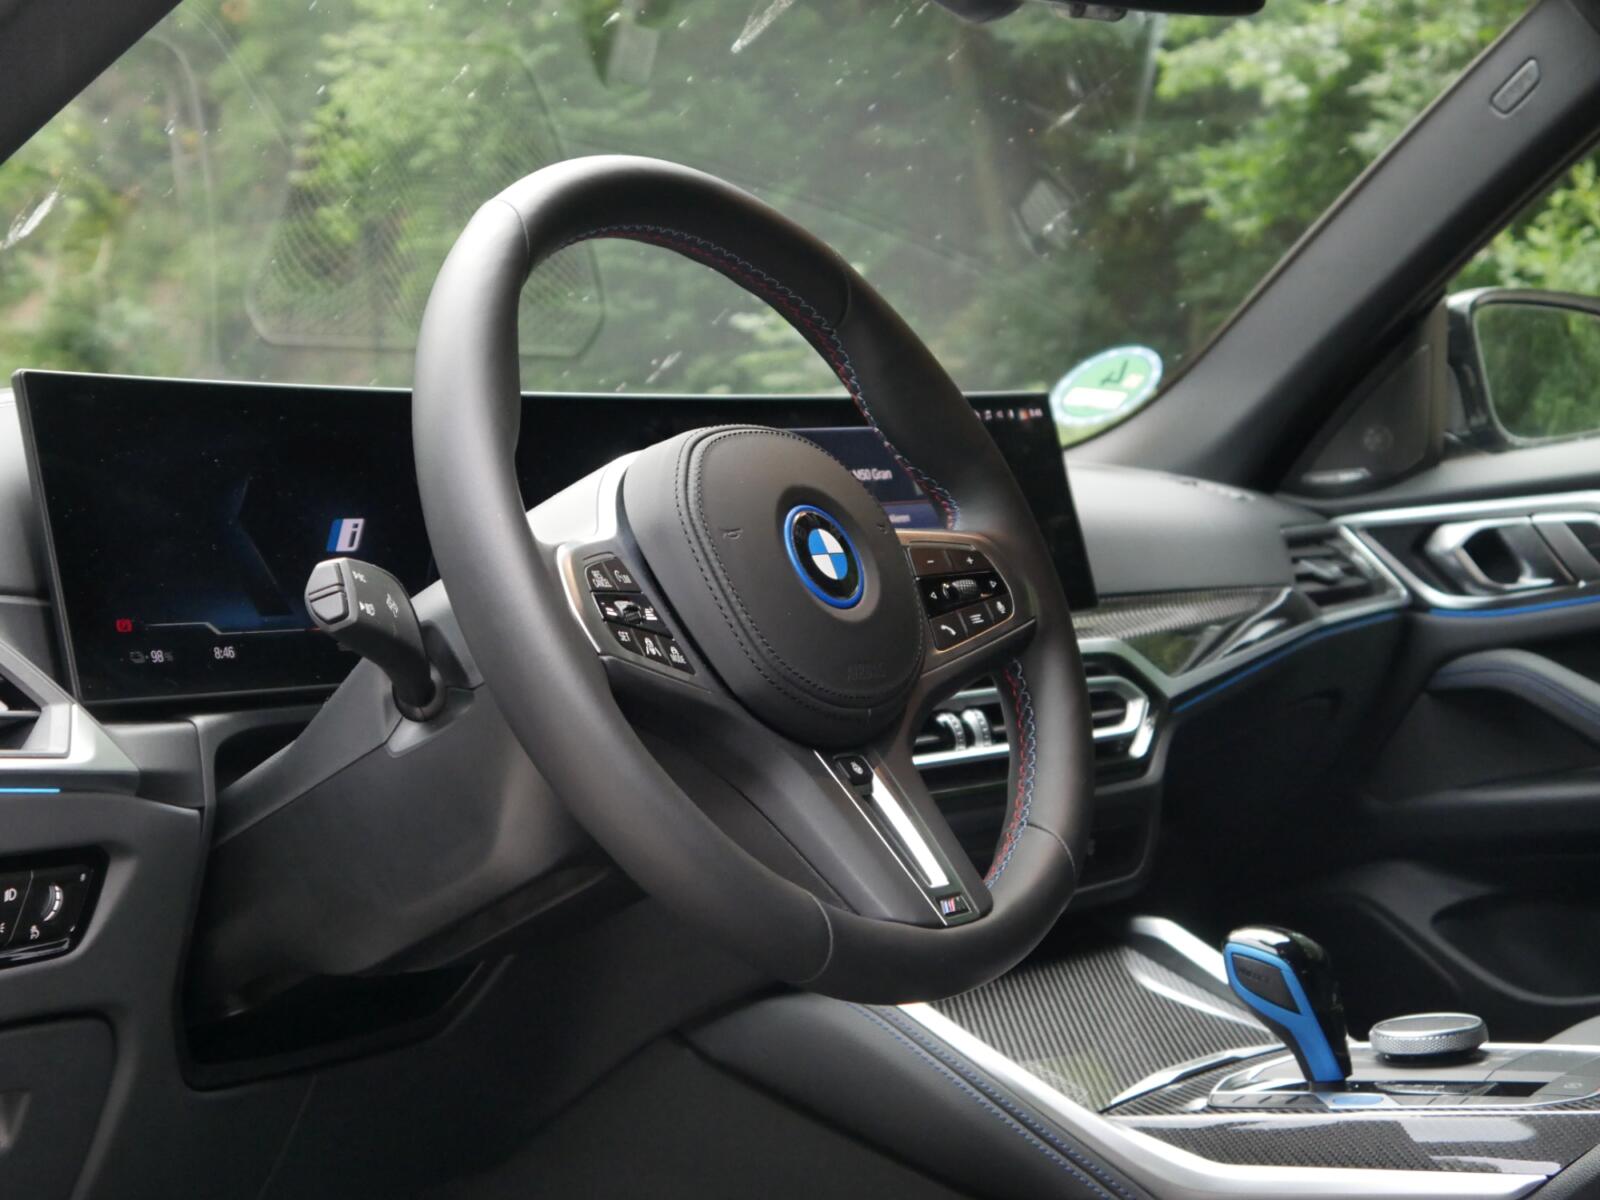 BMW bietet Sitzheizung für 17 Euro pro Monat im Abo an